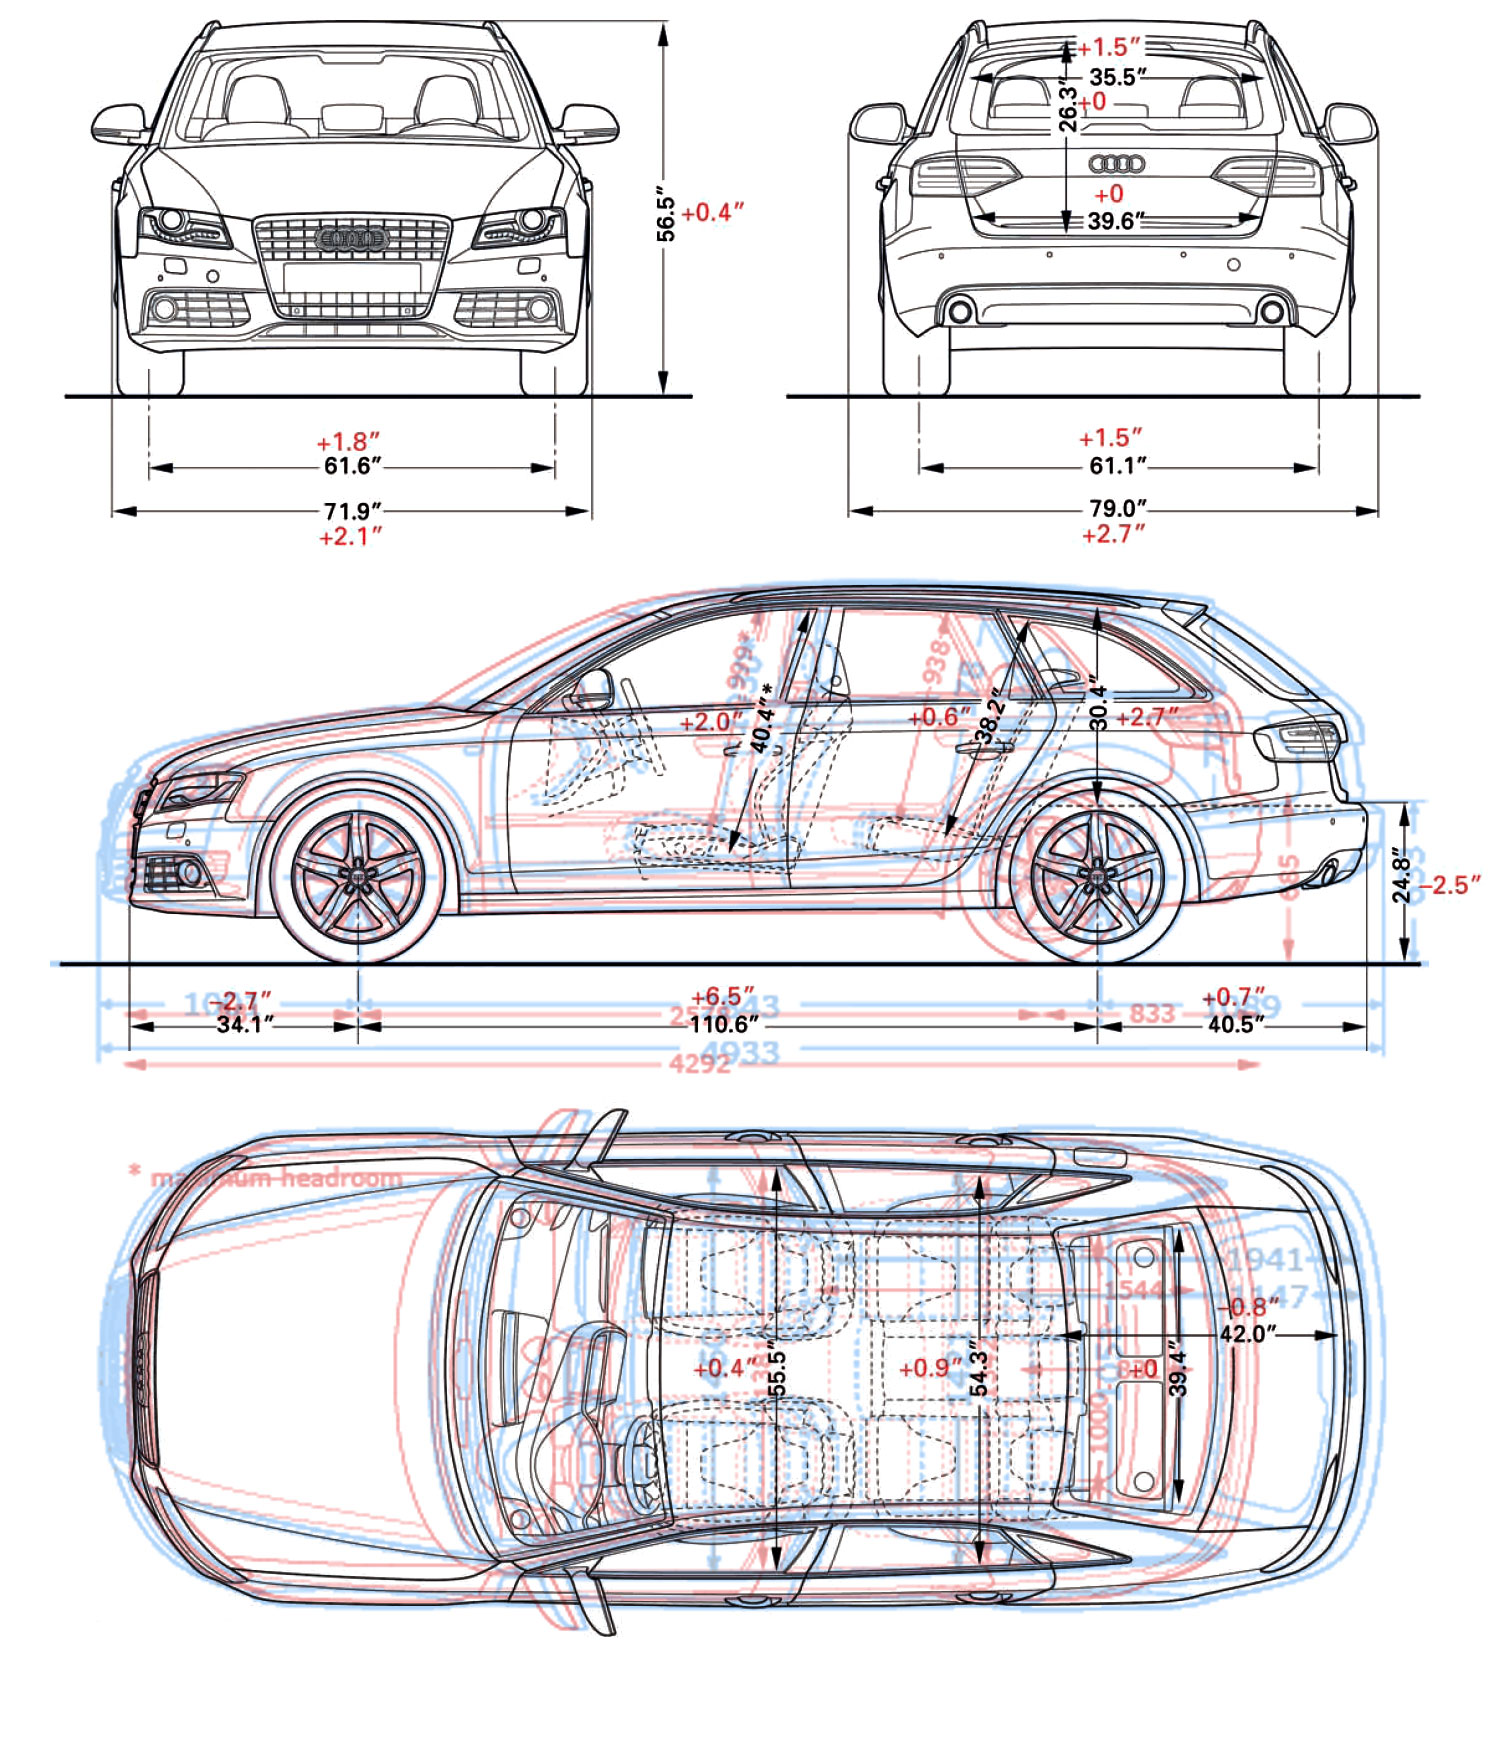 Audi A4 (B7) Avant 2.0 TDI 140HP 6speed specs, dimensions